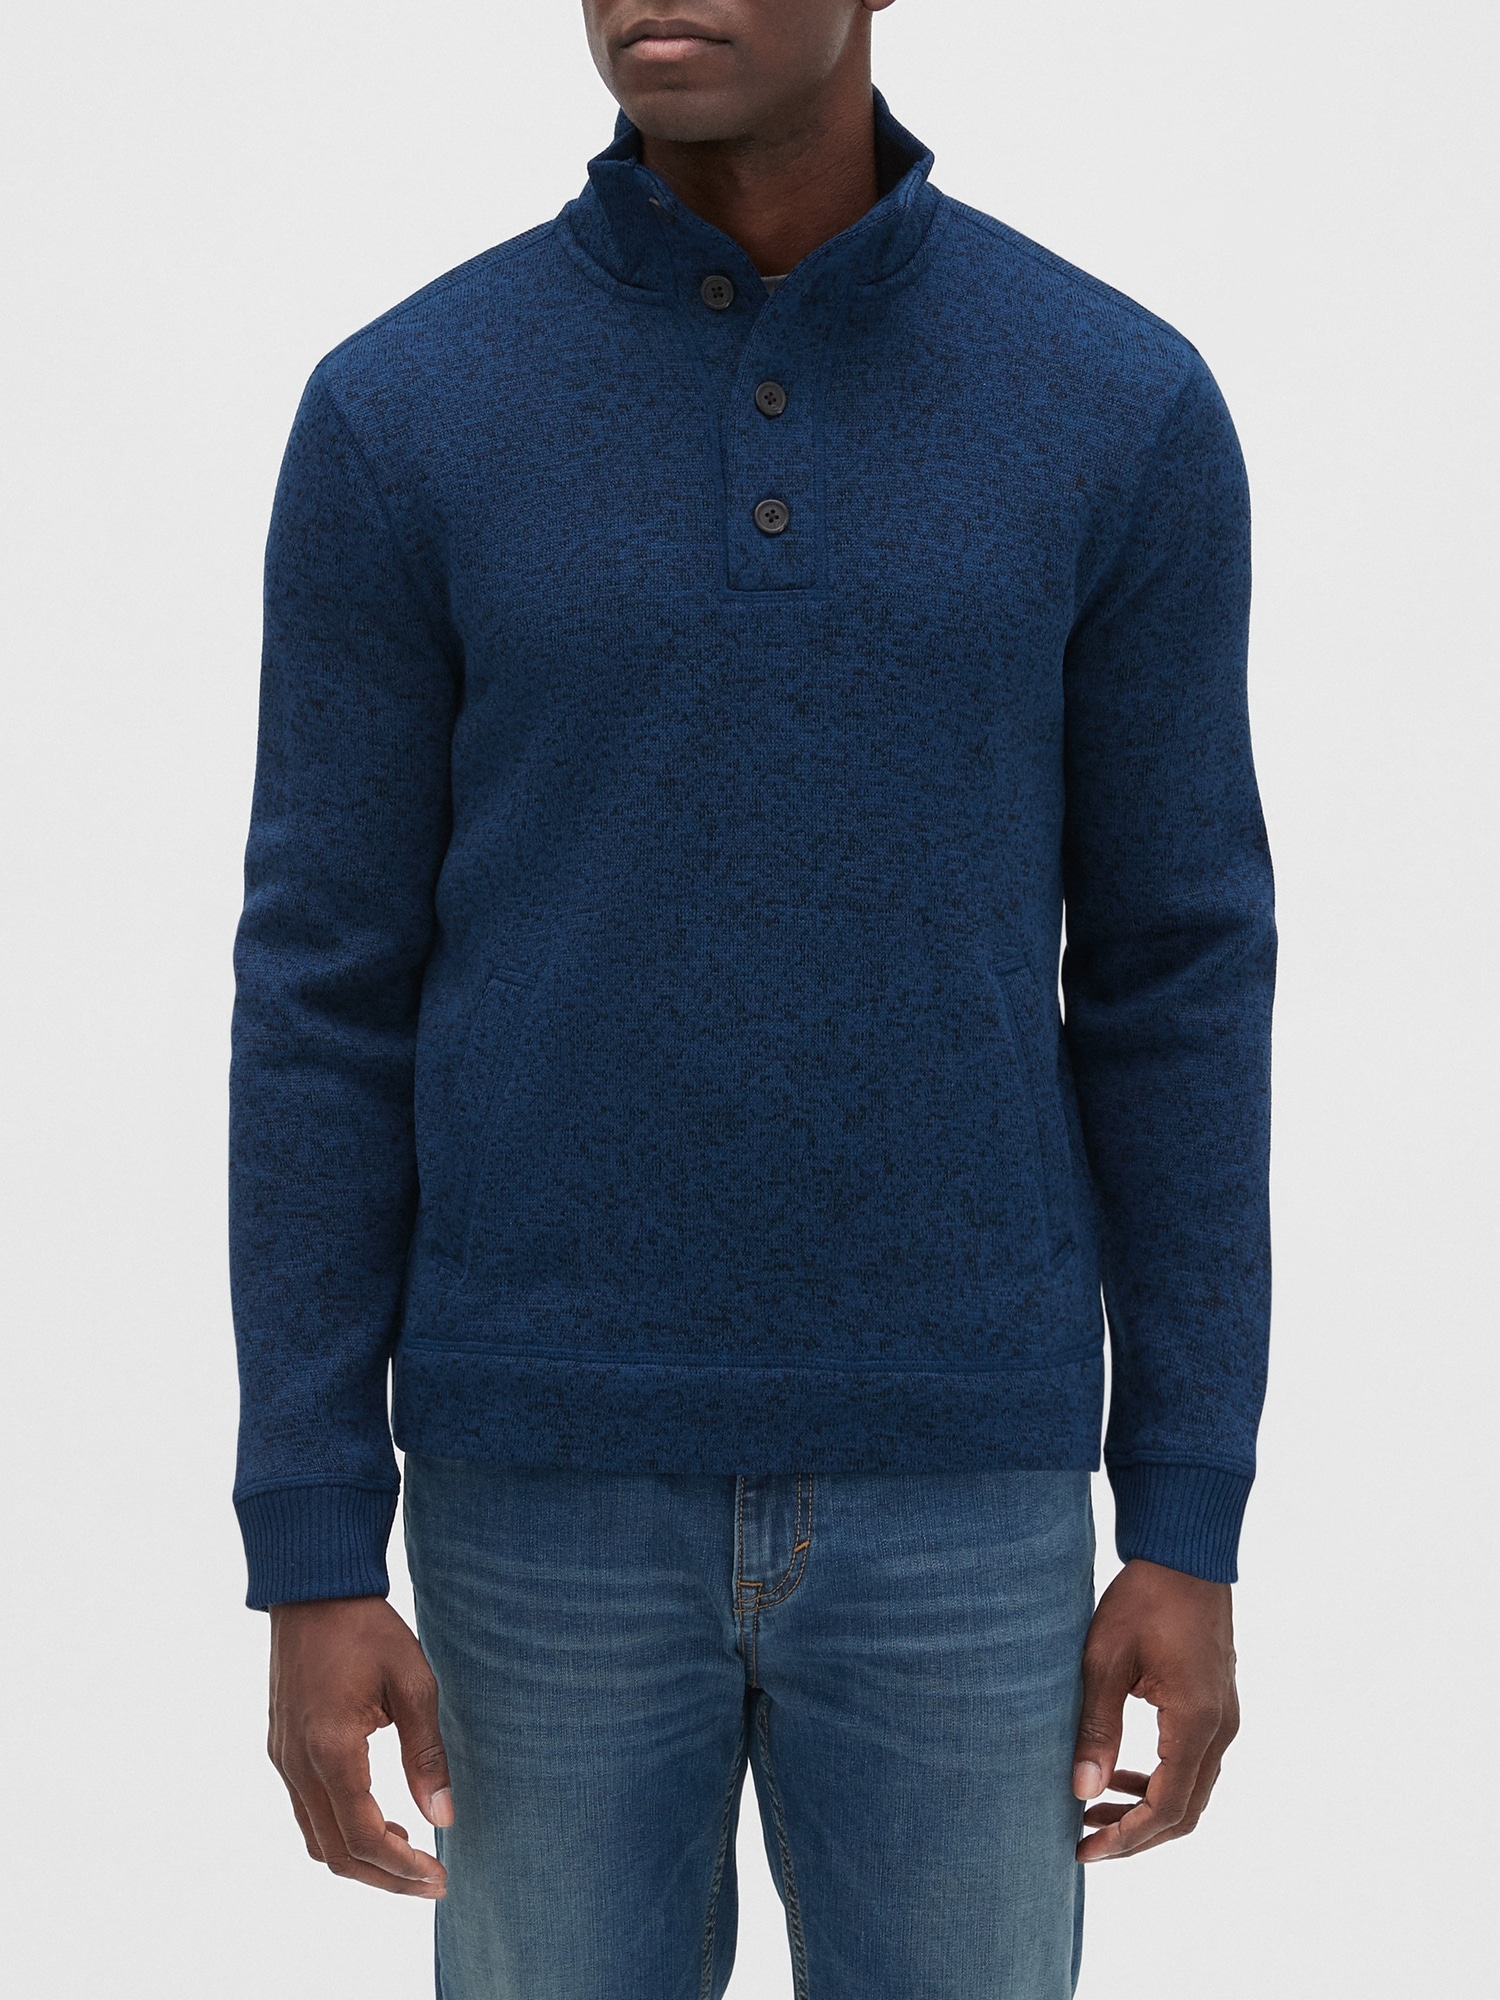 GAP Mens Long Sleeves Fleece Front half-zip mockneck Pullover Sweater NEW